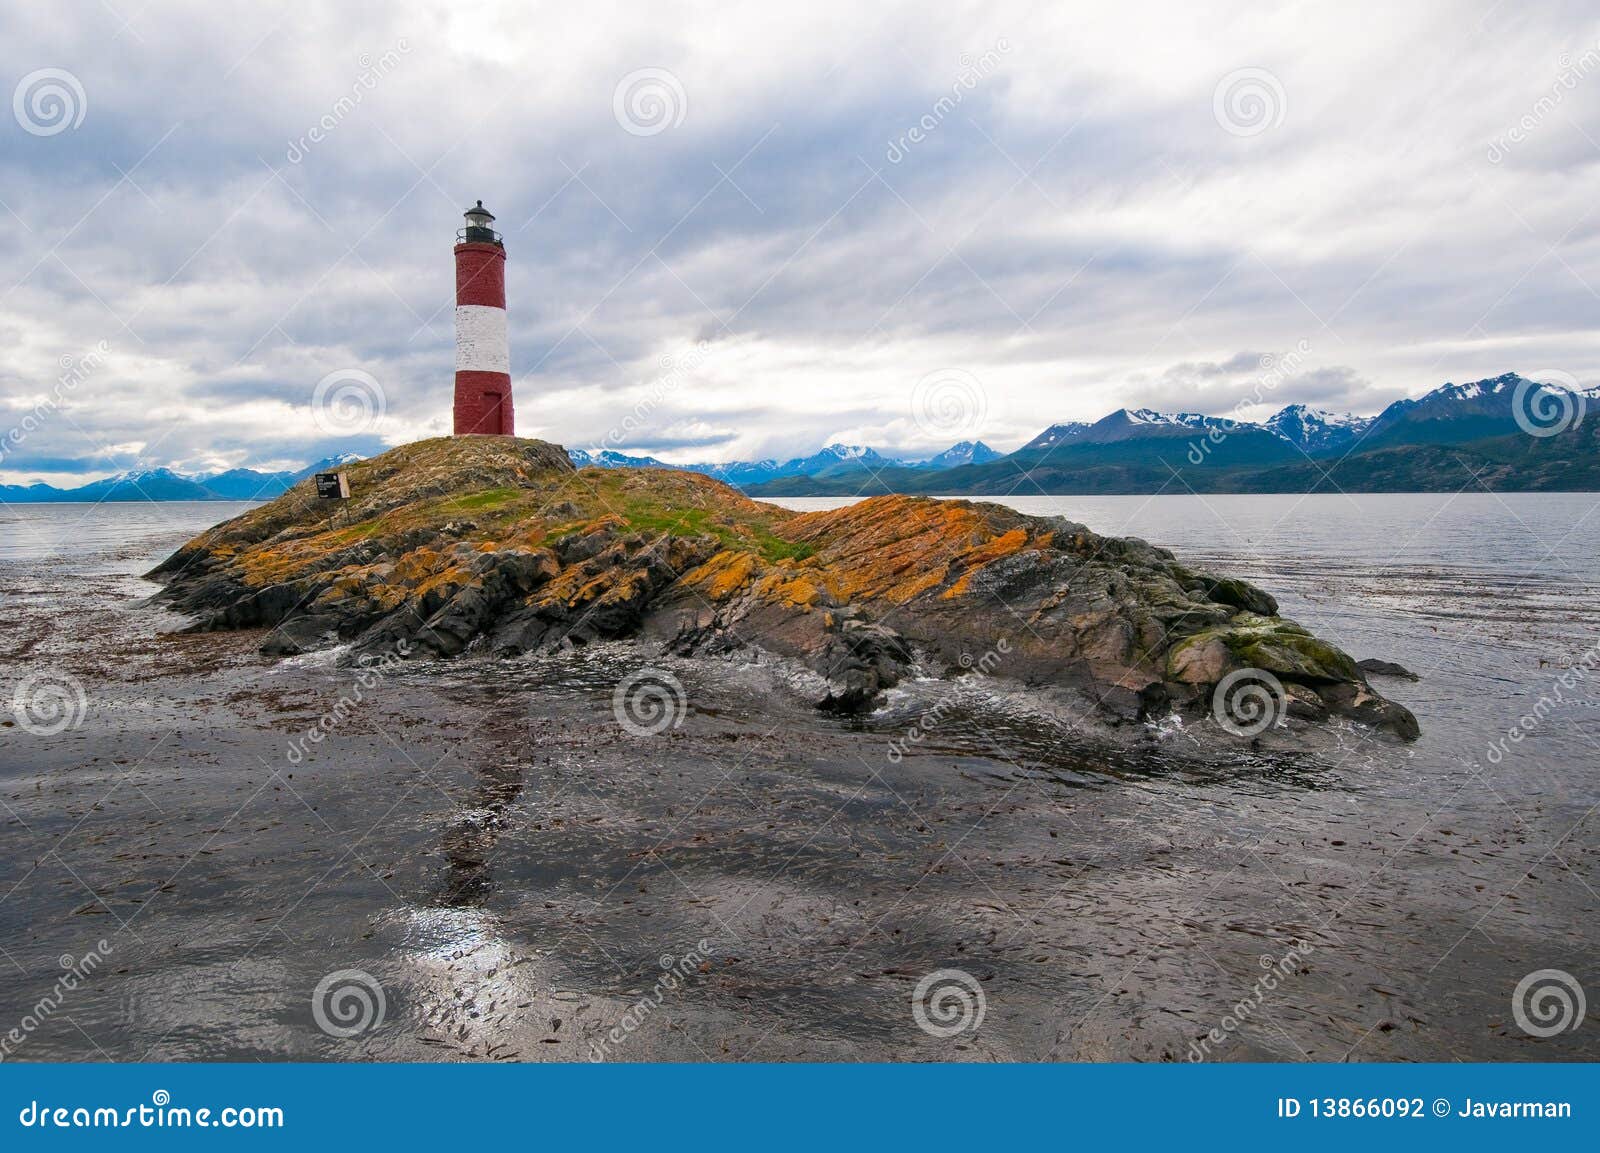 les eclaireurs lighthouse, beagle channel, ushuaia